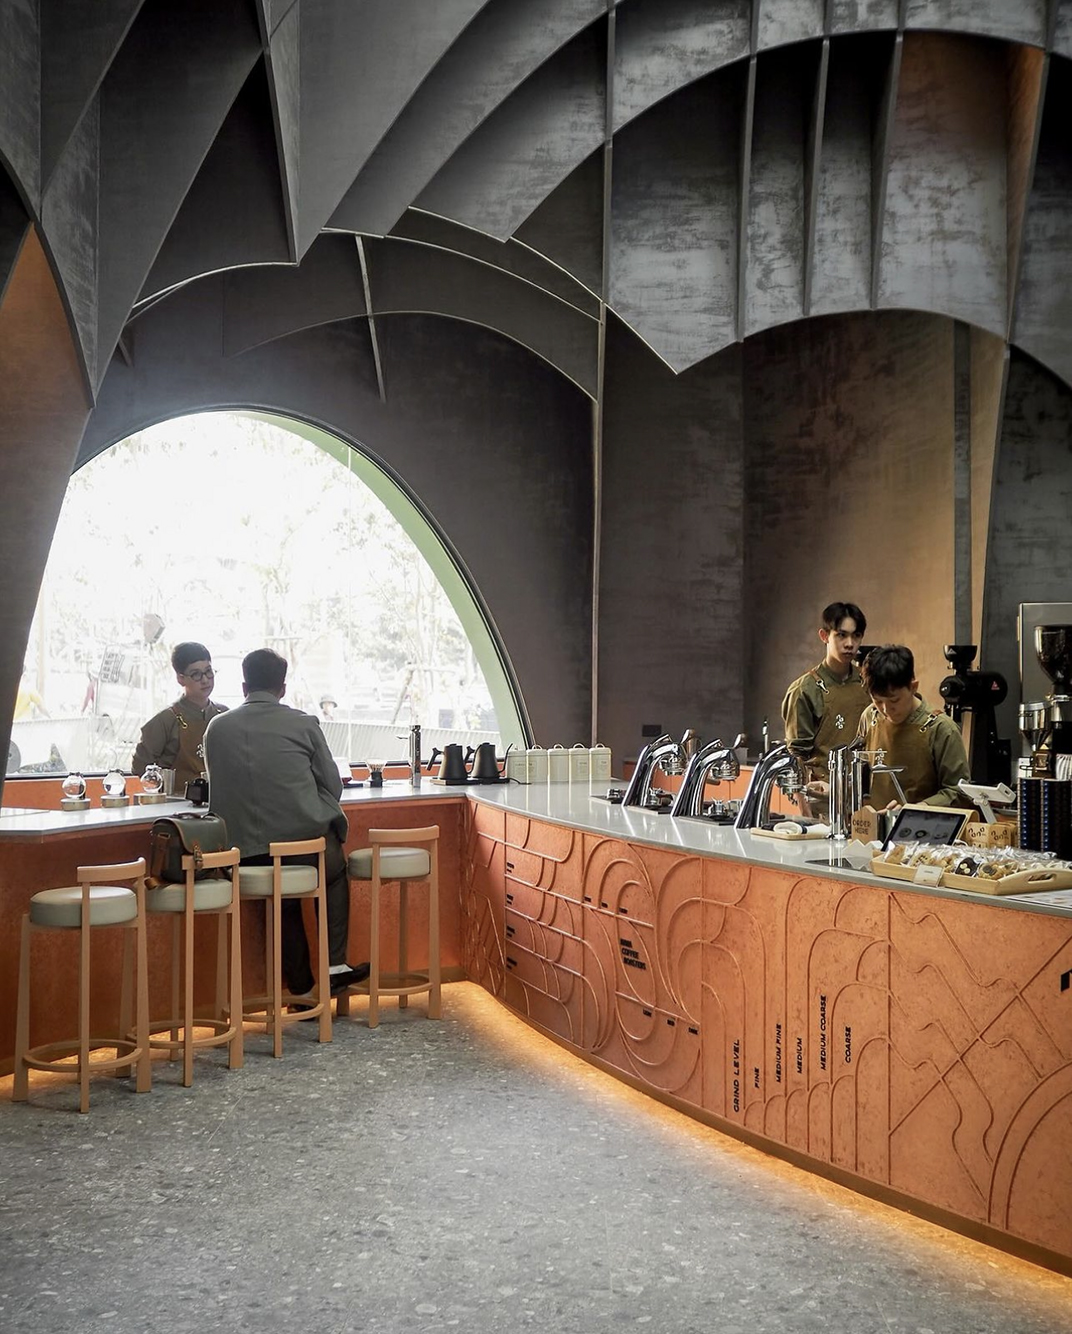 弯曲洞穴棕色调咖啡馆nanacoffee 泰国 深圳 上海 北京 广州 武汉 咖啡店 餐饮商业 logo设计 vi设计 空间设计